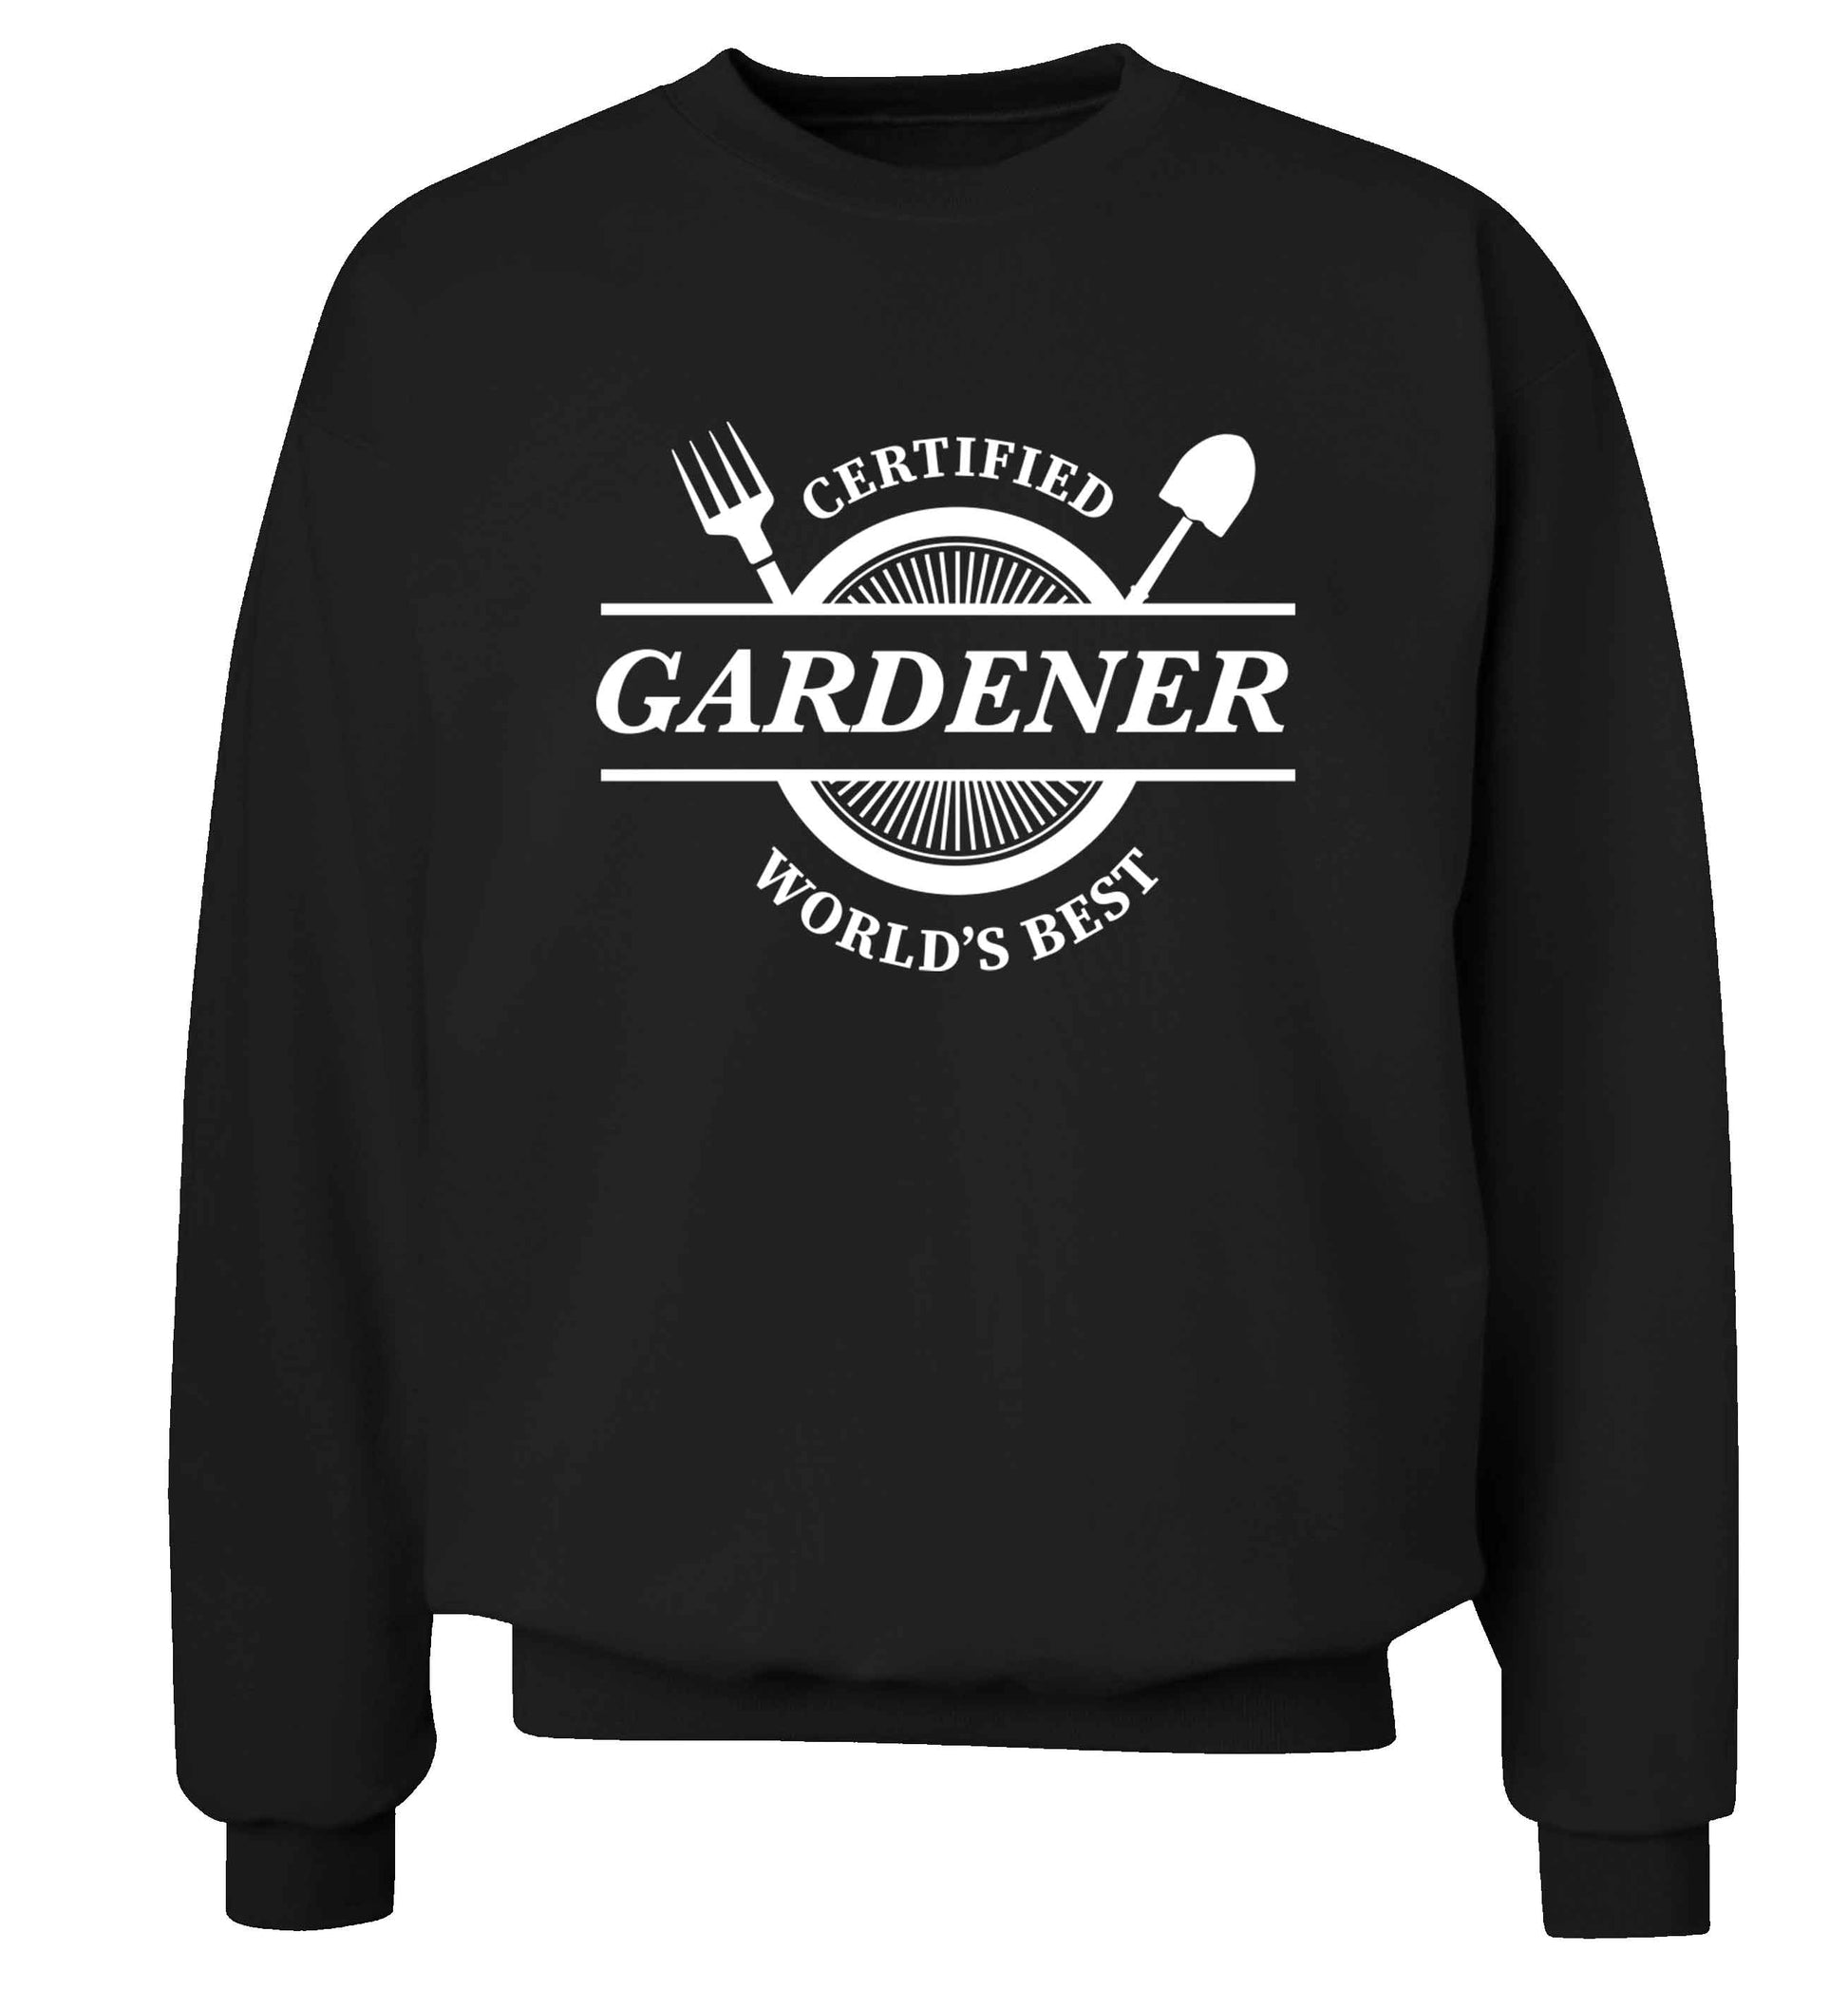 Certified gardener worlds best Adult's unisex black Sweater 2XL